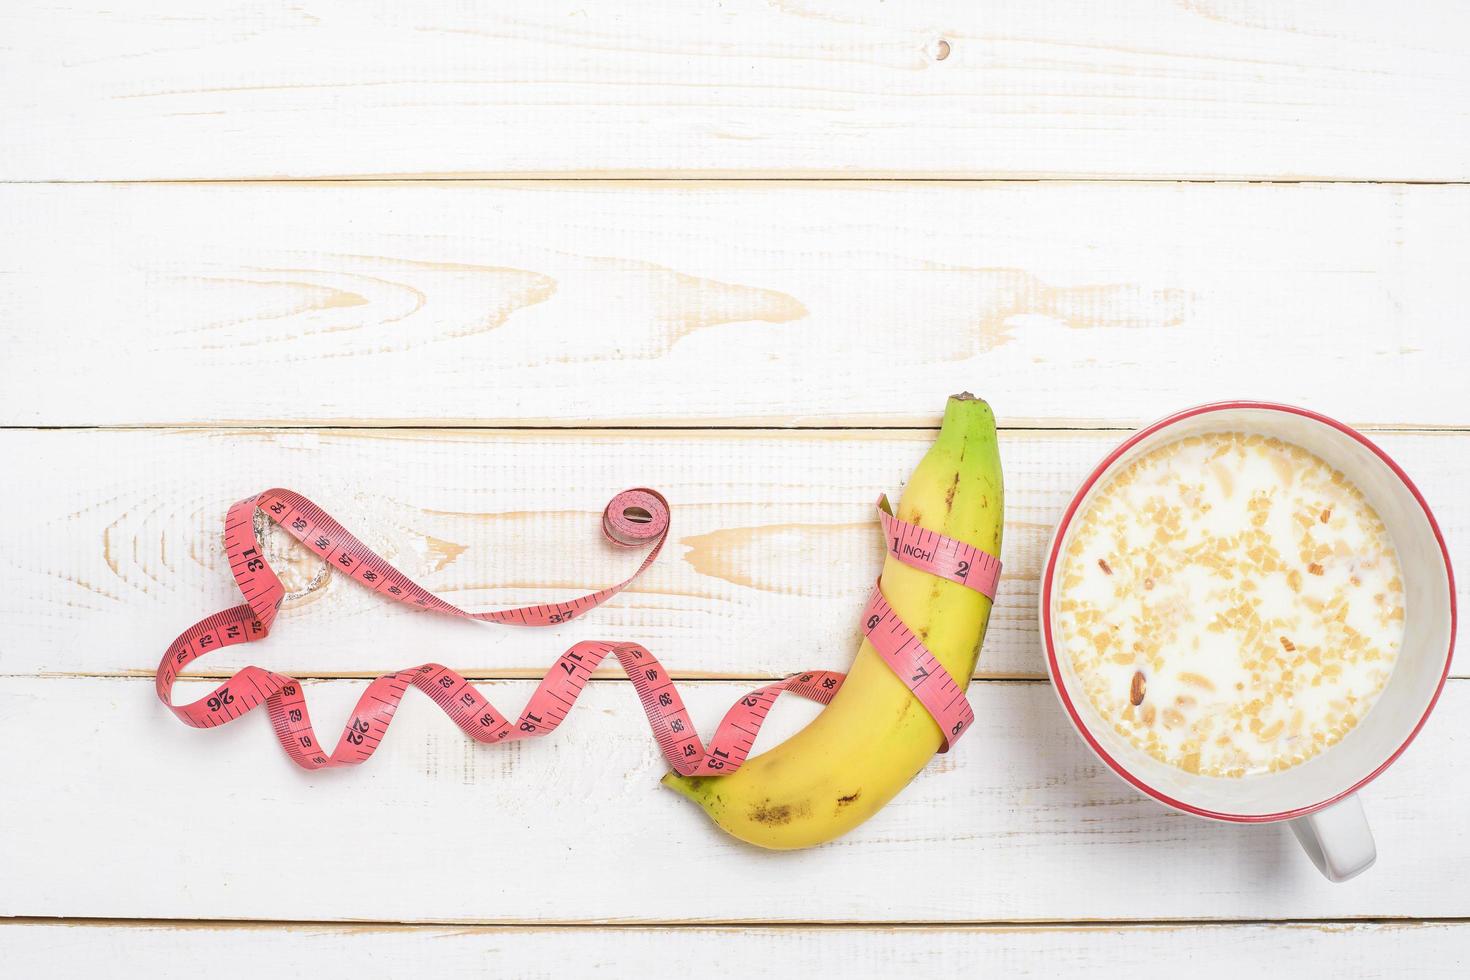 dieetvoeding voor gezond eten op witte houten achtergrond foto